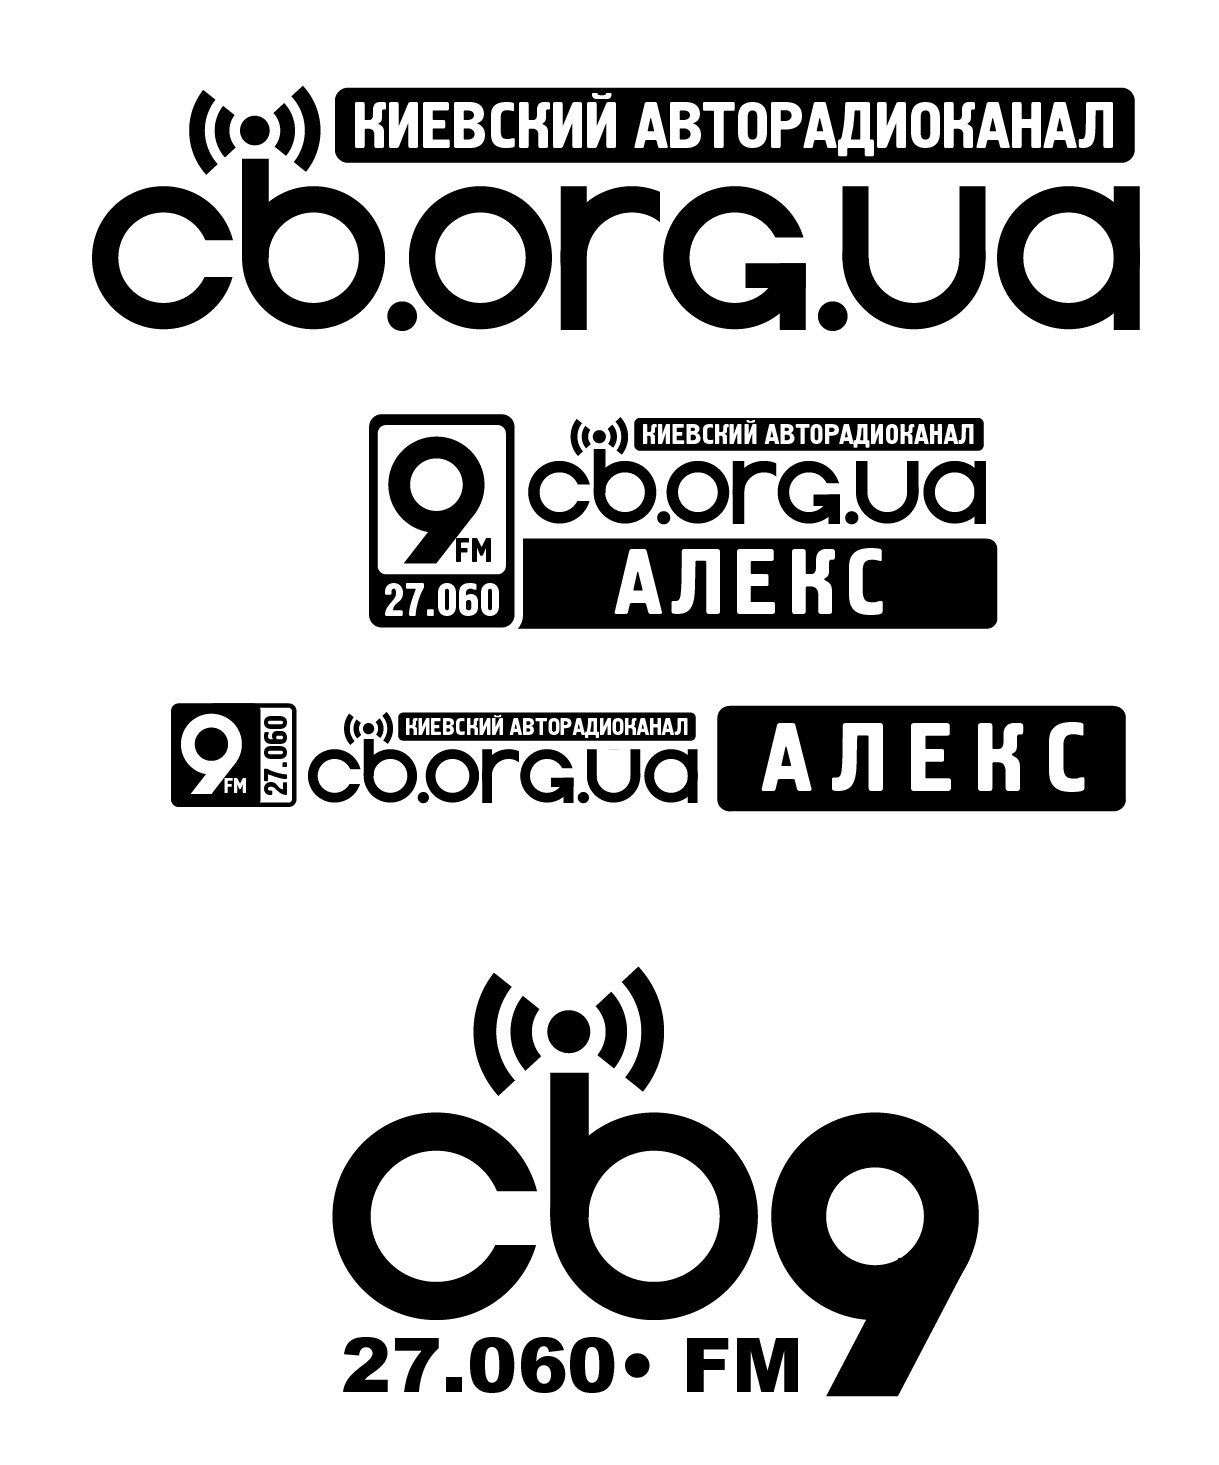 cb_org_ua_logo1.jpg